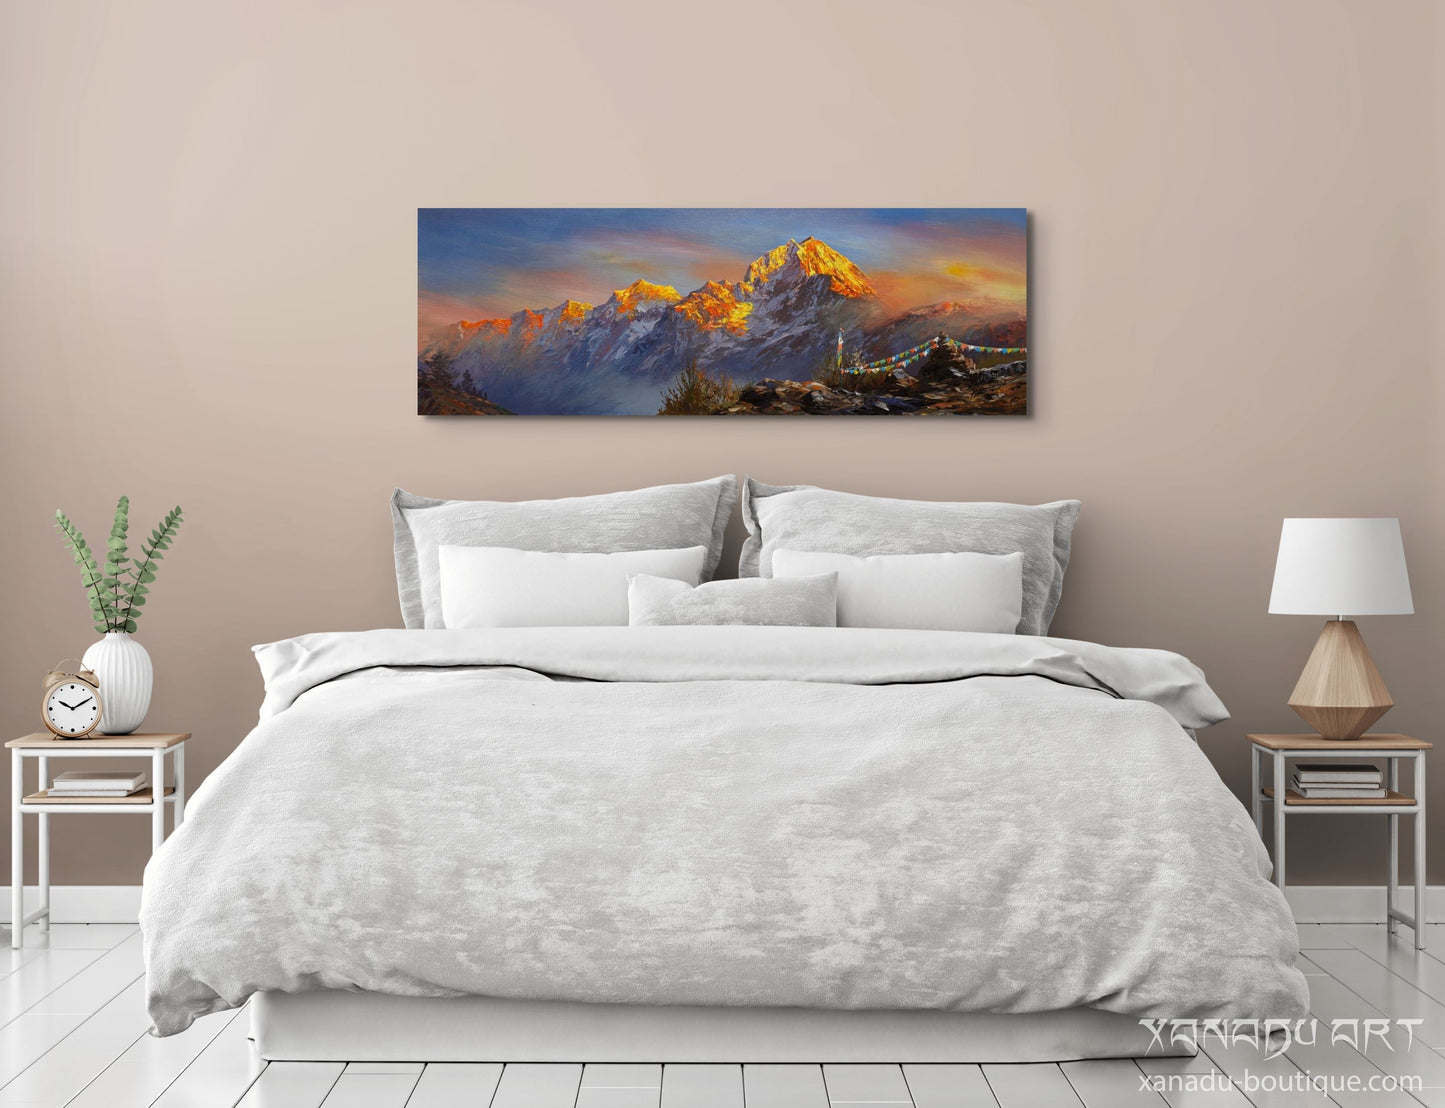 Mount Everest golden landscape